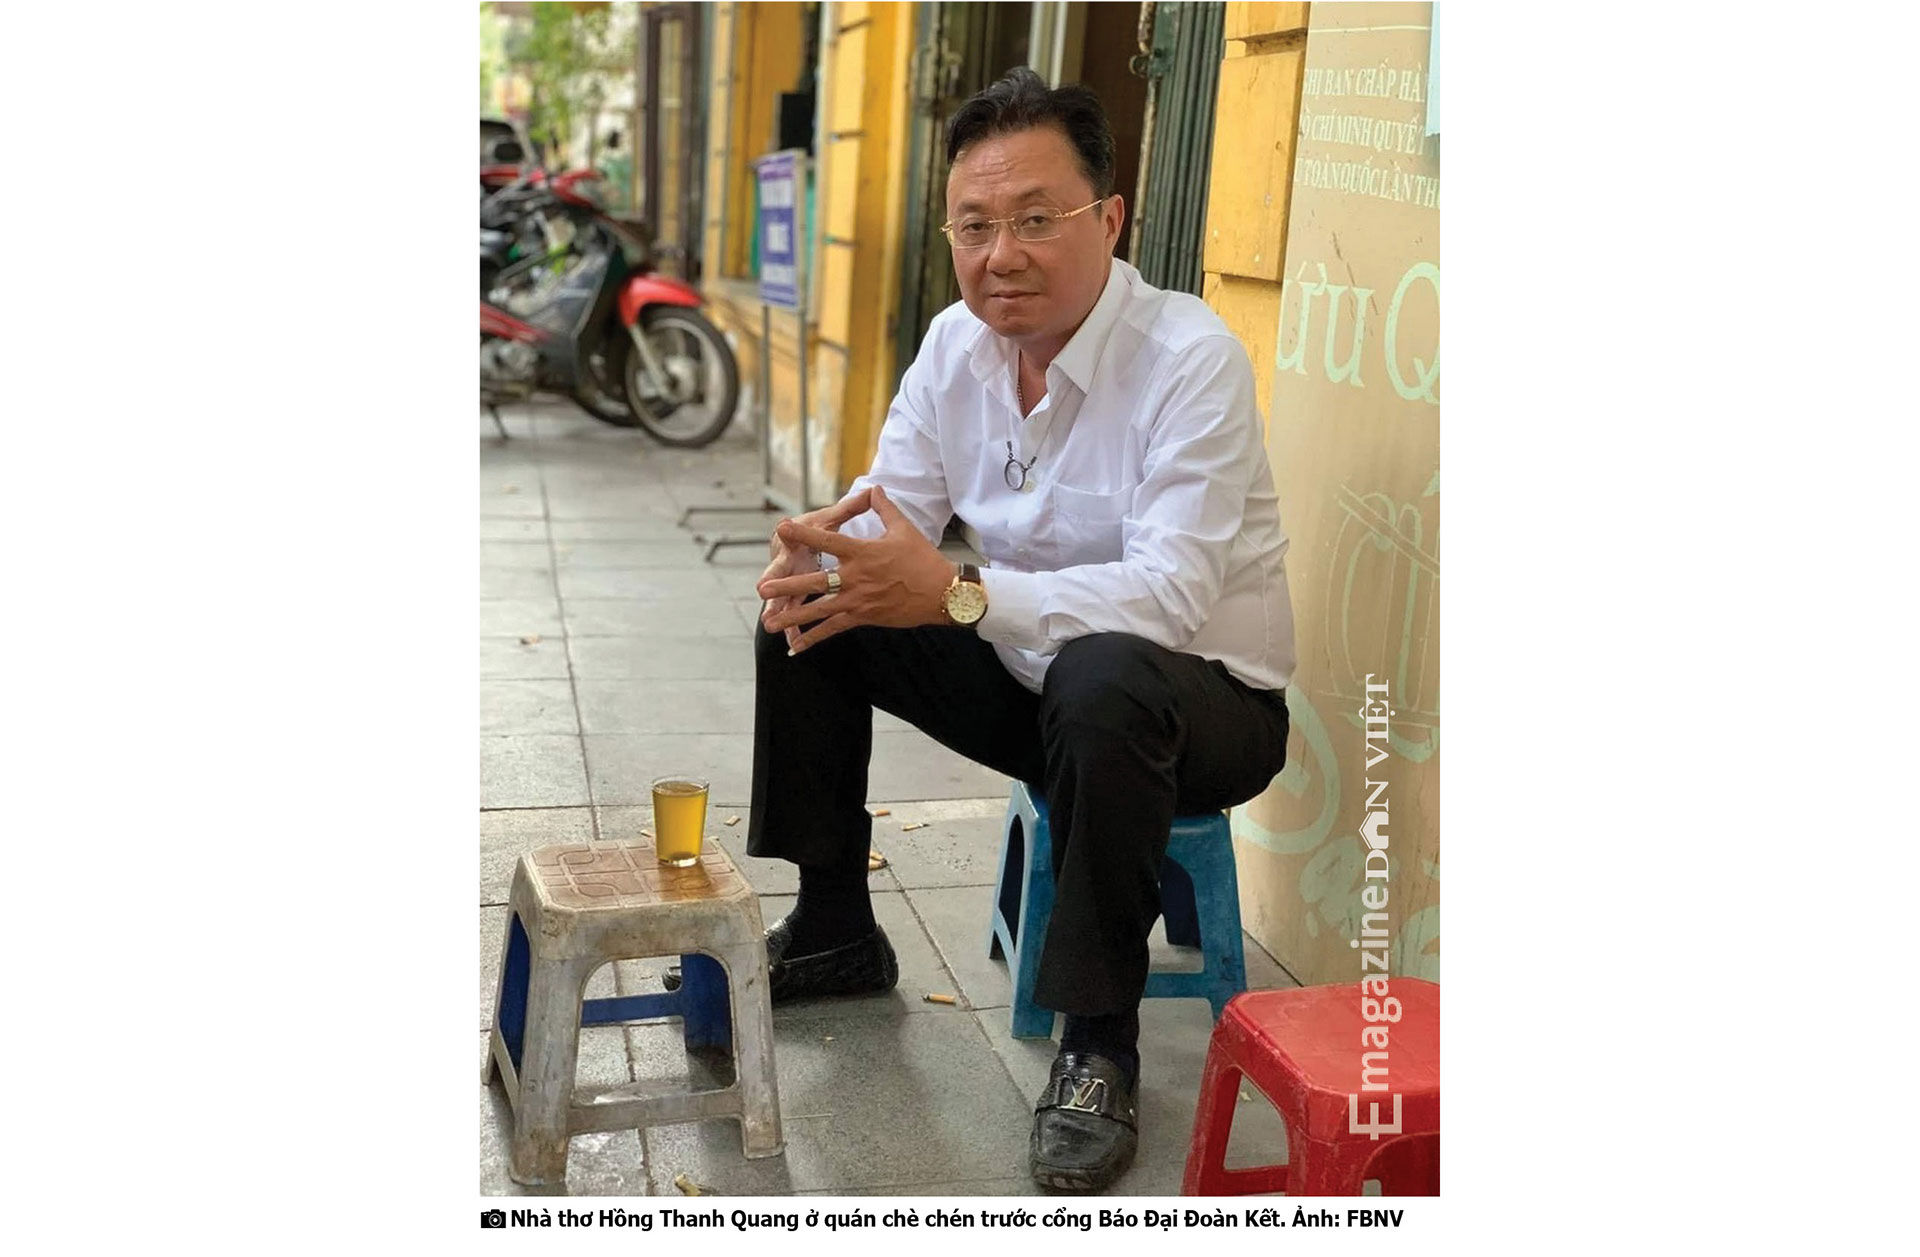 Trò chuyện giữa nhà báo Lưu Quang Định và nhà thơ,  nhà báo Hồng Thanh Quang: Về Thơ, Tình yêu và Cuộc đời - Ảnh 26.